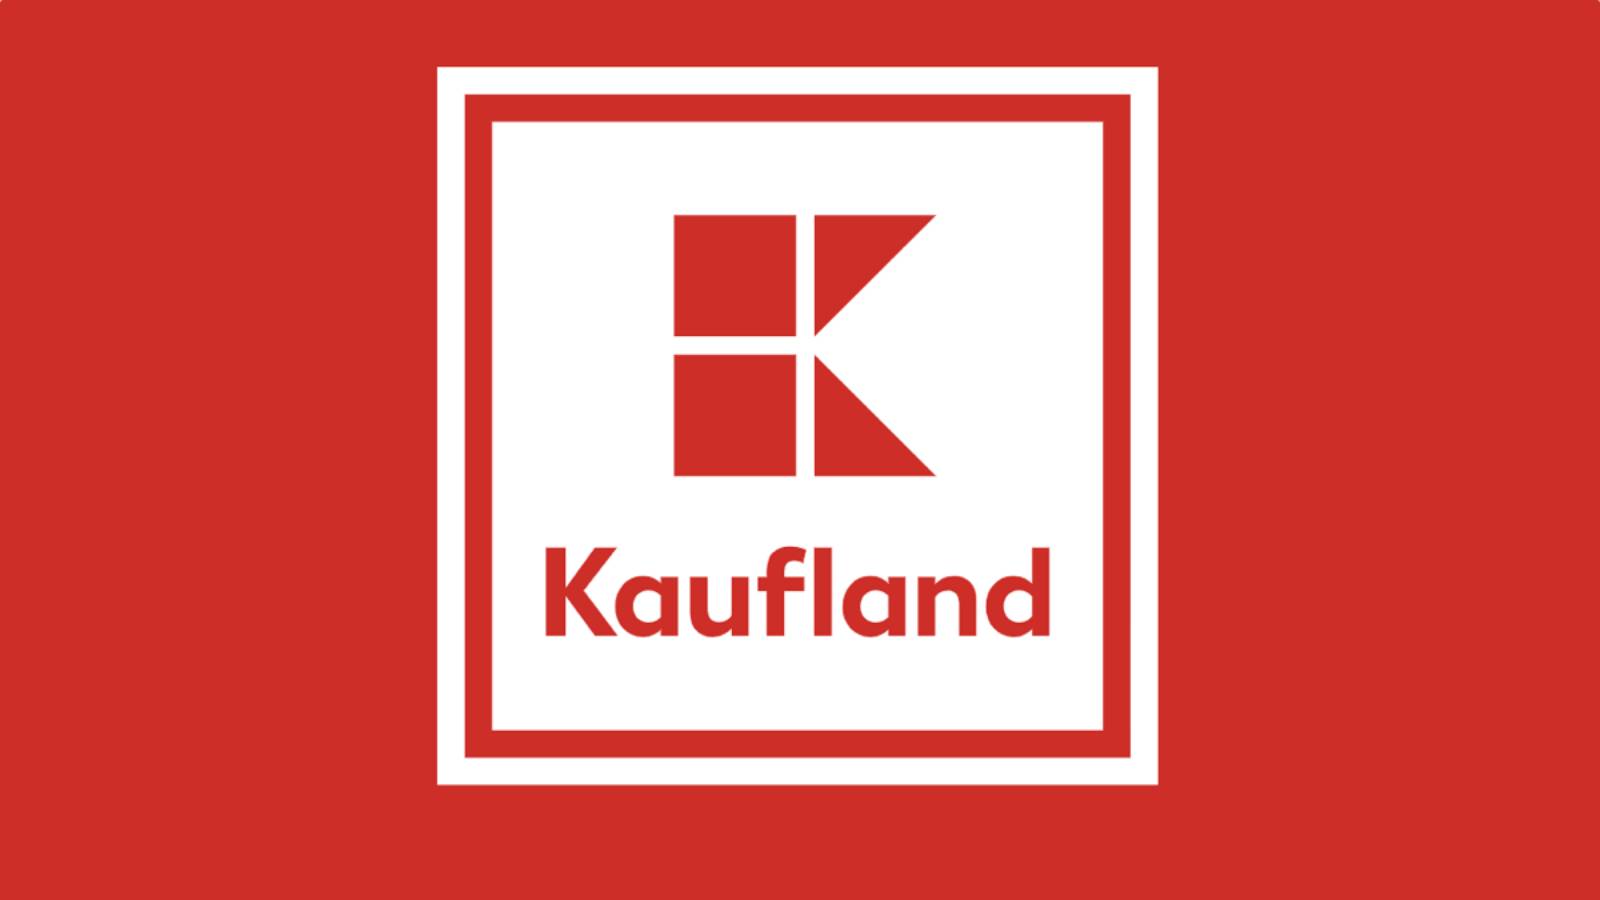 Protagonizada por Kaufland